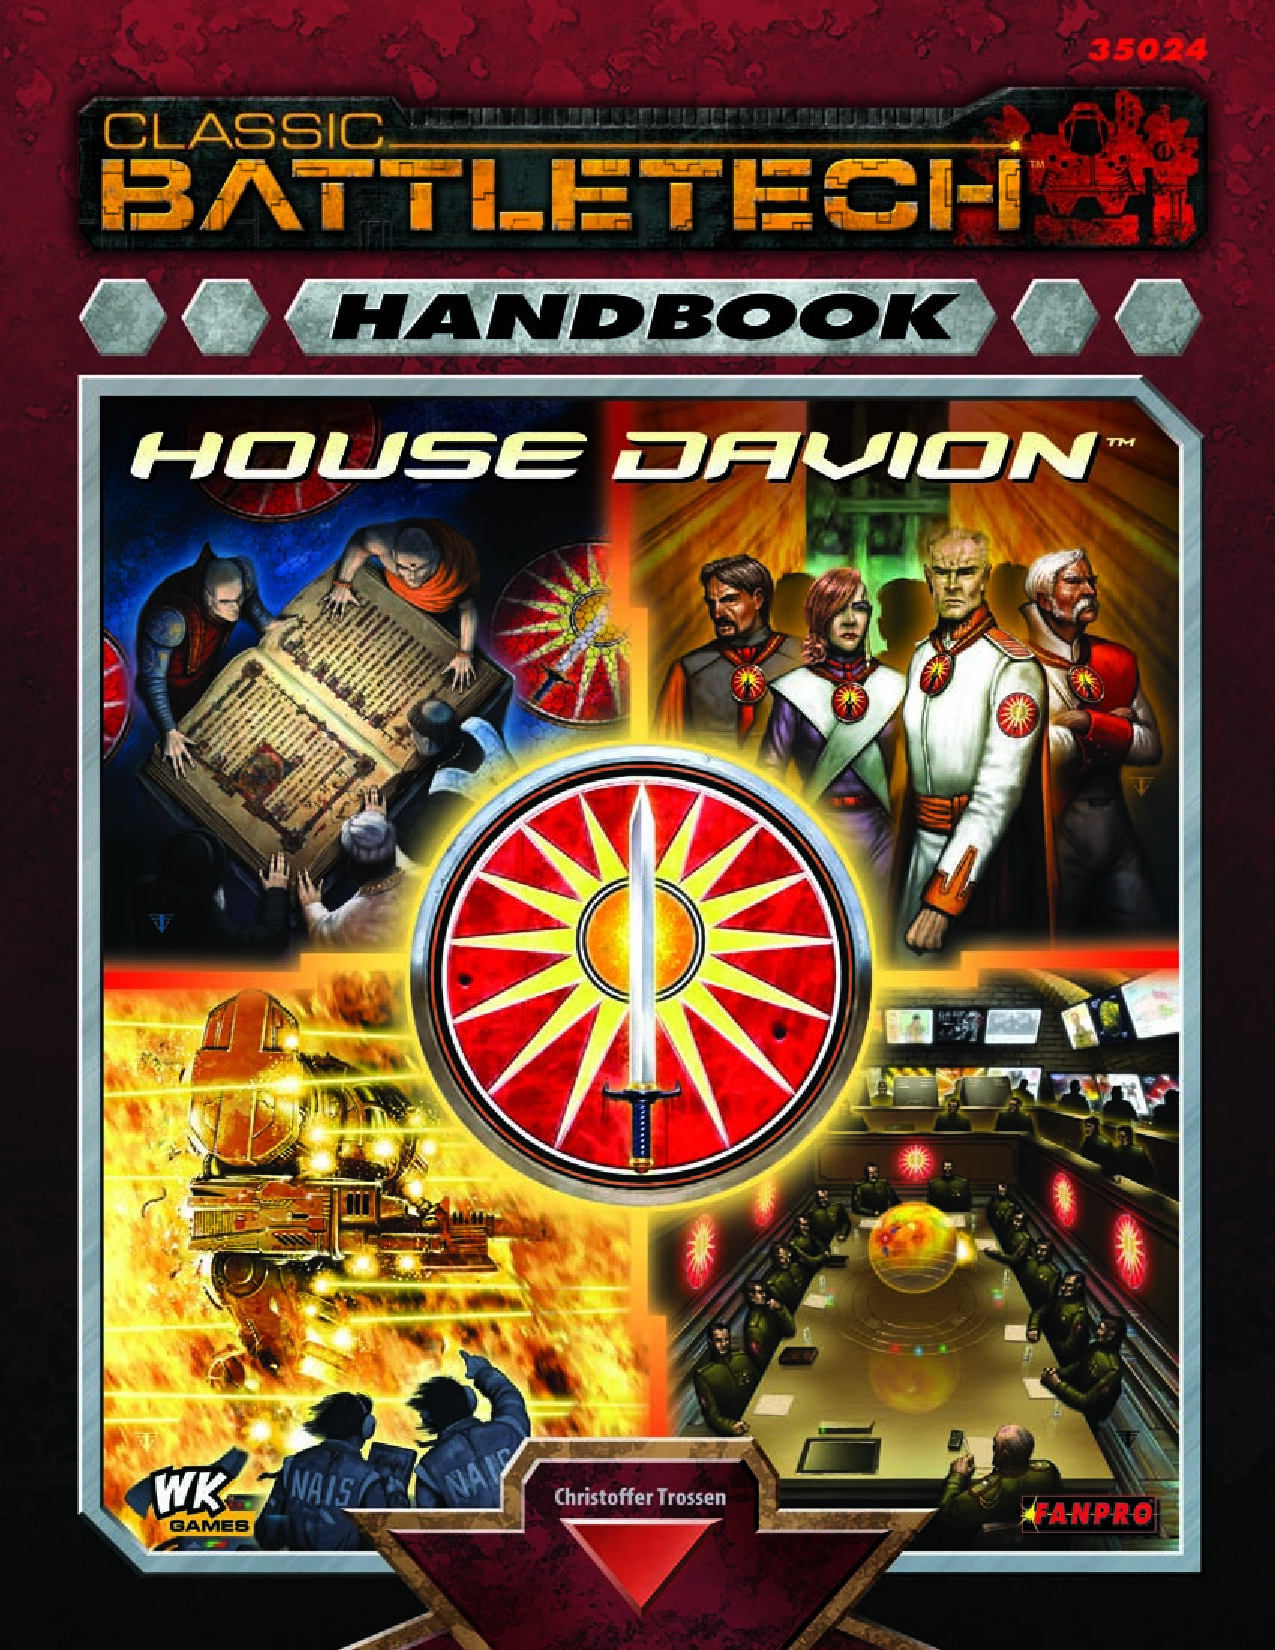 Classic Battletech Handbook House Davion